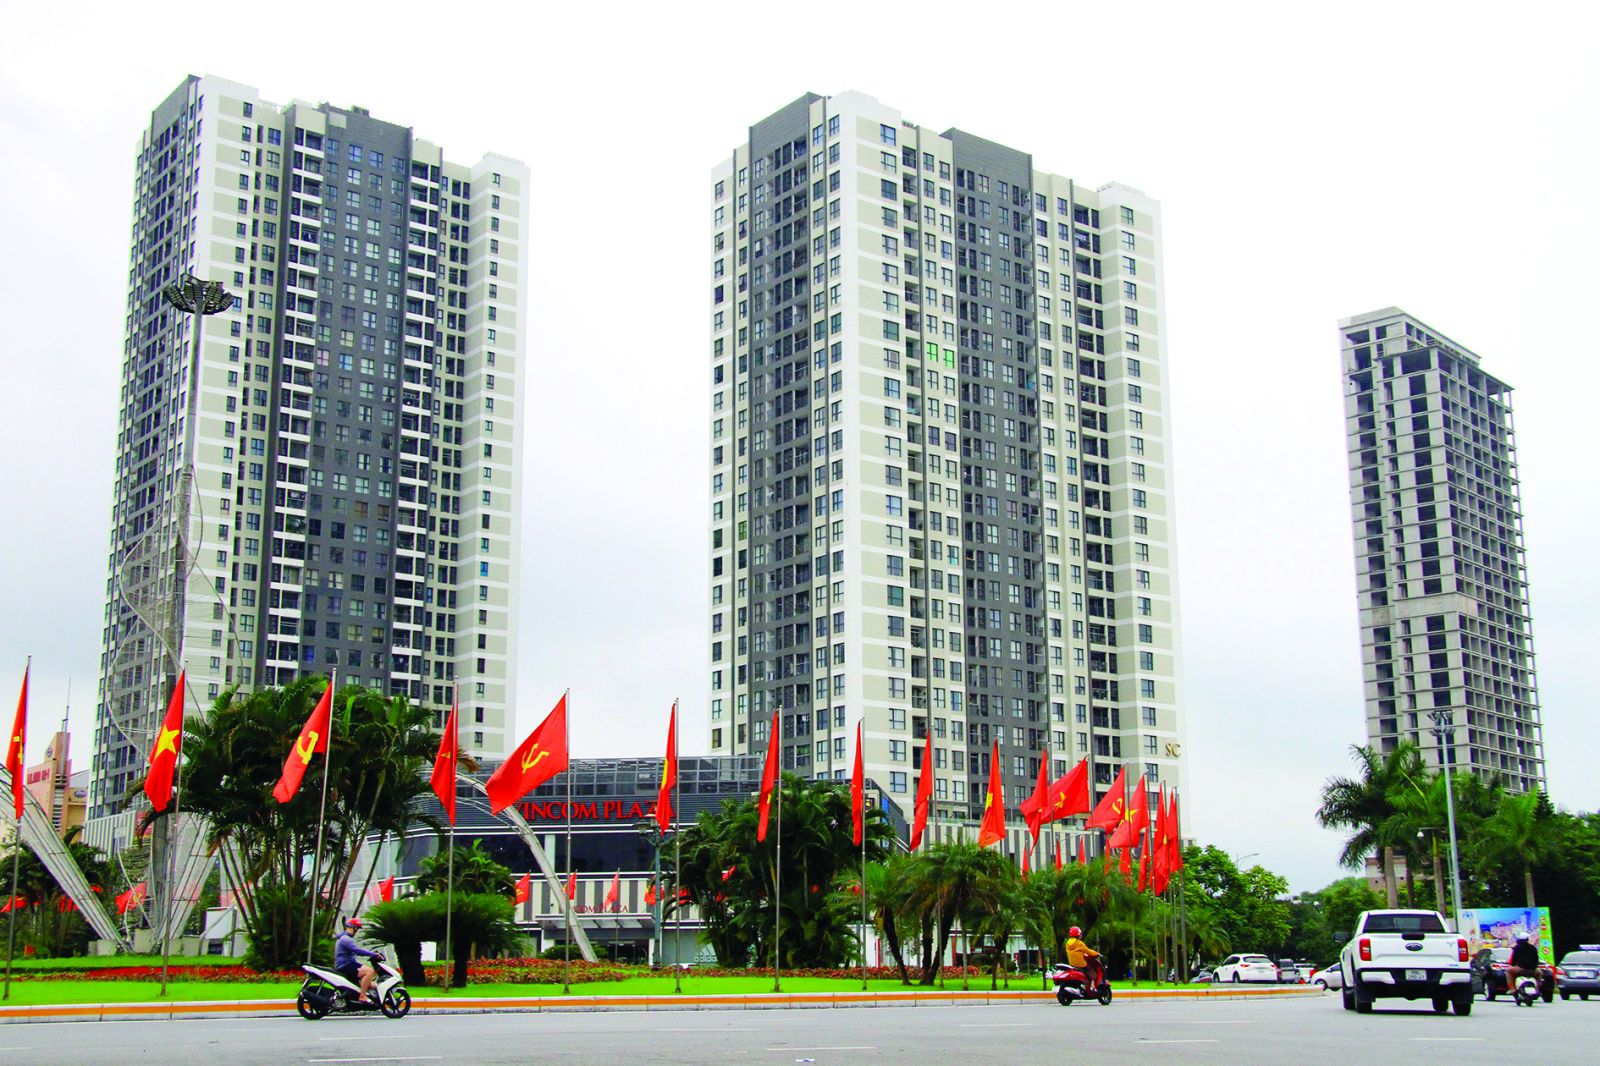  Tổ hợp trung tâm thương mại Vincom Bắc Ninh – biểu tượng kinh tế mới của Bắc Ninh